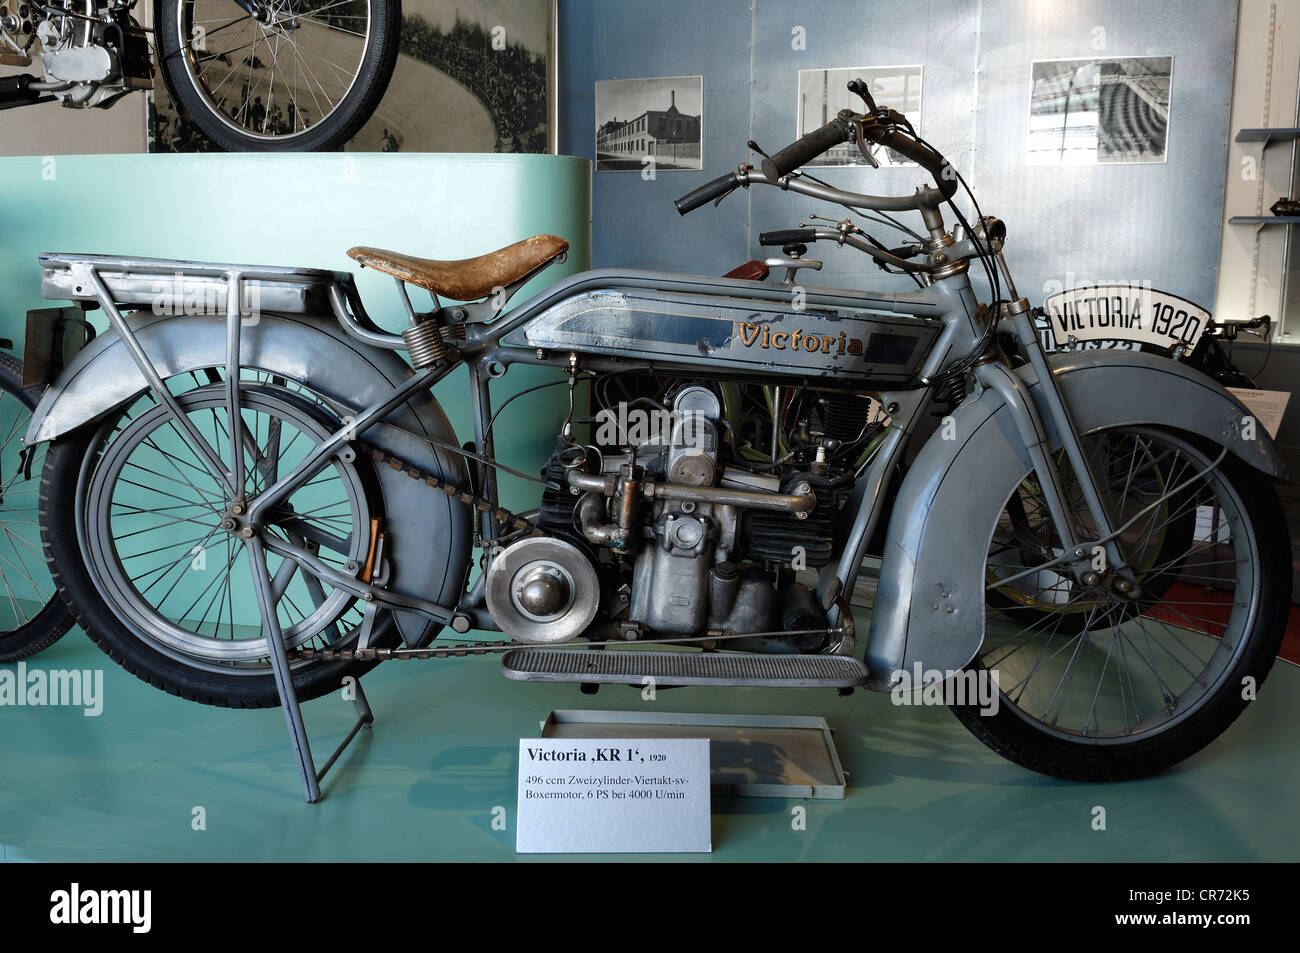 Motorrad "Victoria KR 21' aus dem Jahre 1920 im Museum für Industriekultur,  Aeussere Sulzbacher Straße 60-62, Nürnberg Stockfotografie - Alamy